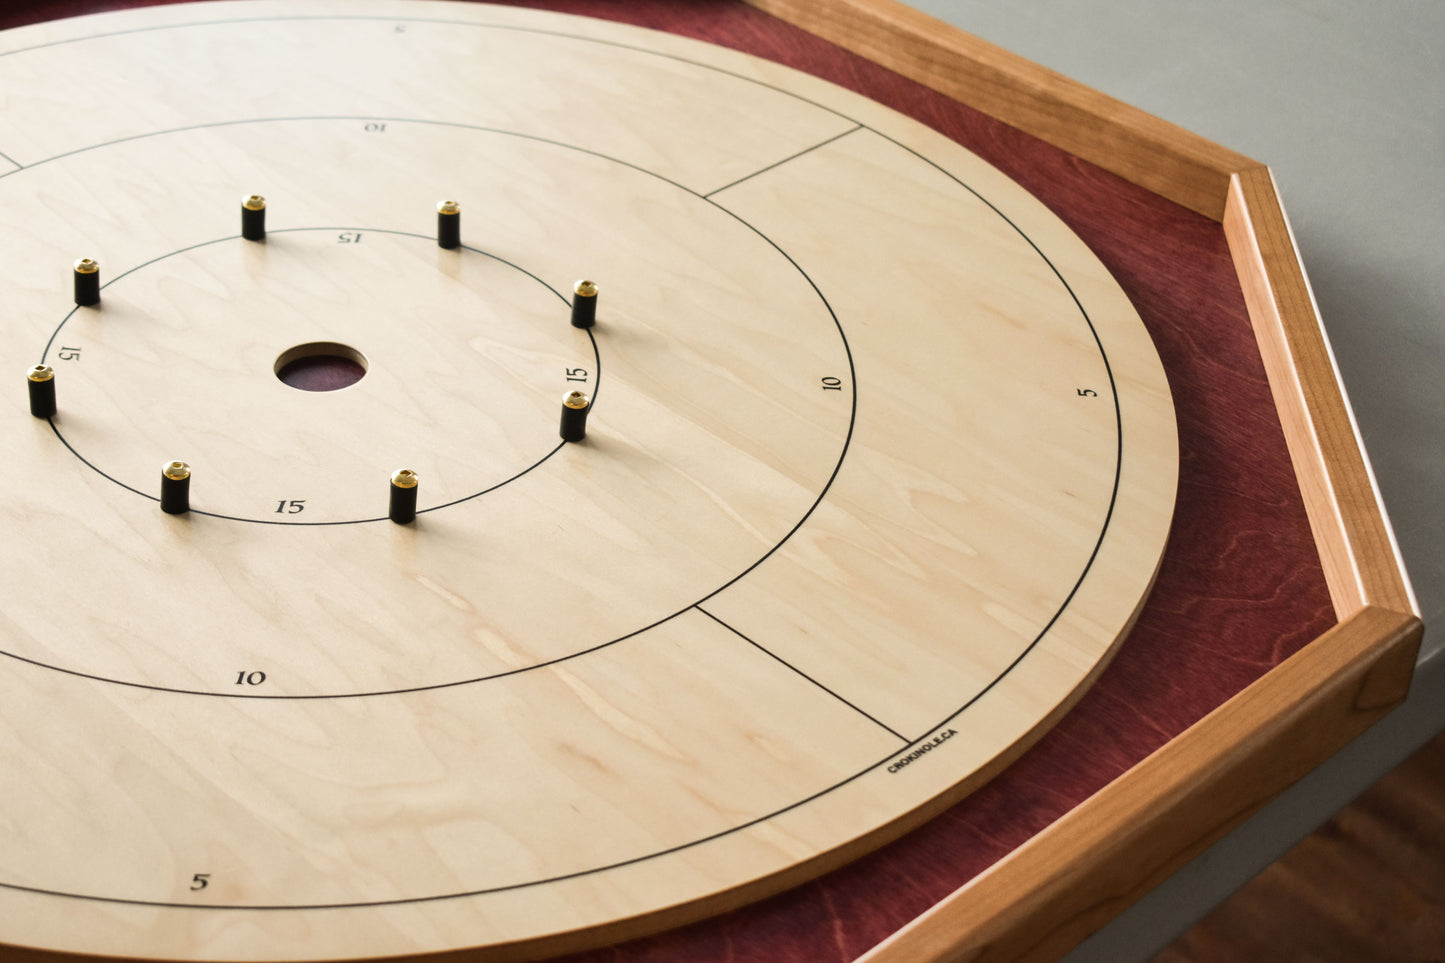 Baltic Bircher Grand jeu de société Crokinole traditionnel (avec chiffres) Kit 